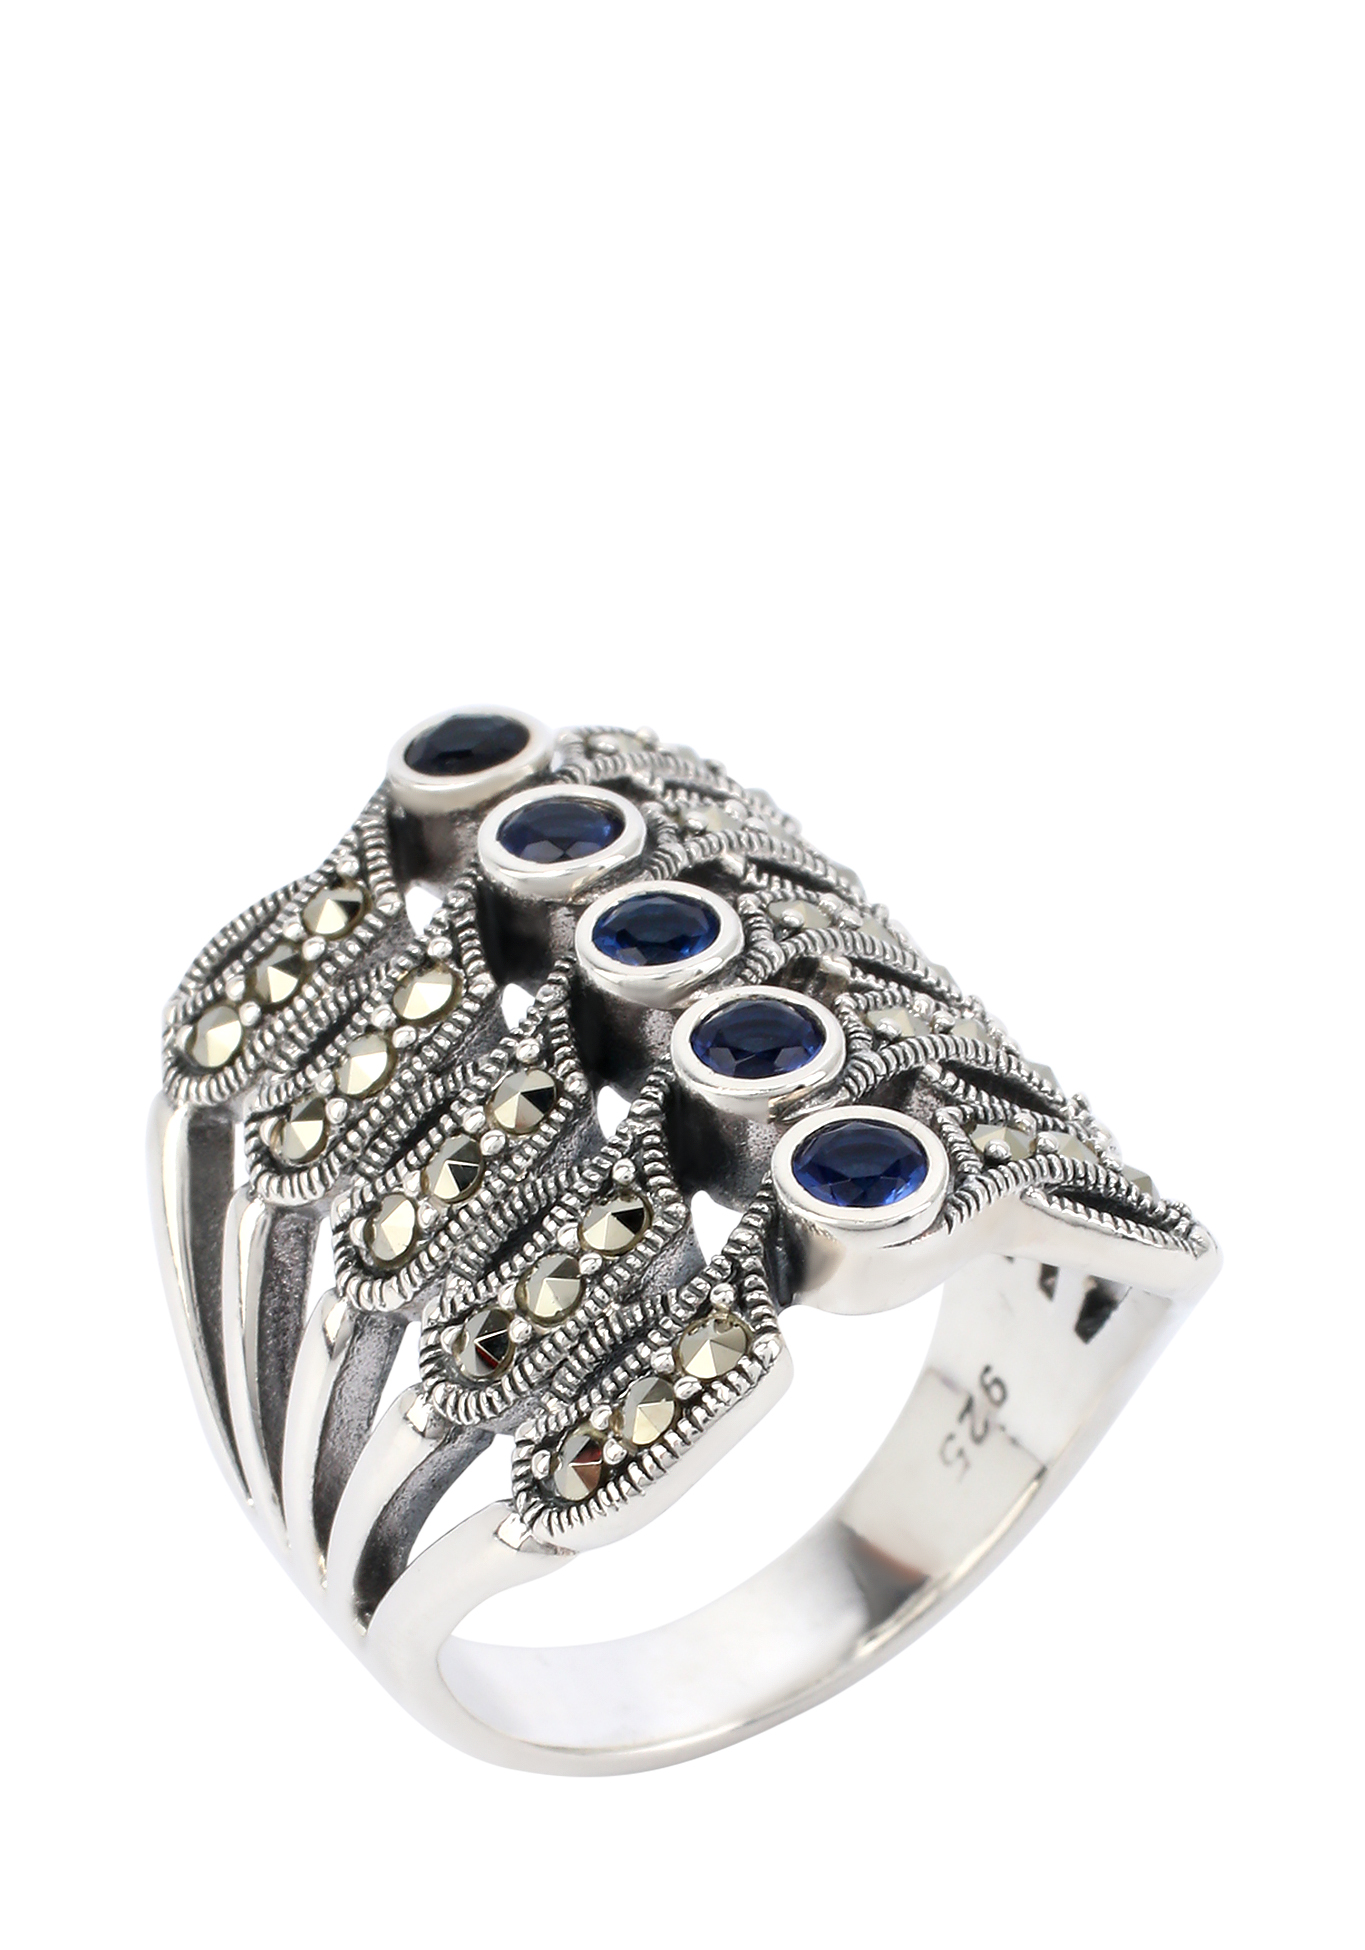 Кольцо серебряное  "Тайные мечты" Марказит, размер 18 сплит шенк - фото 1